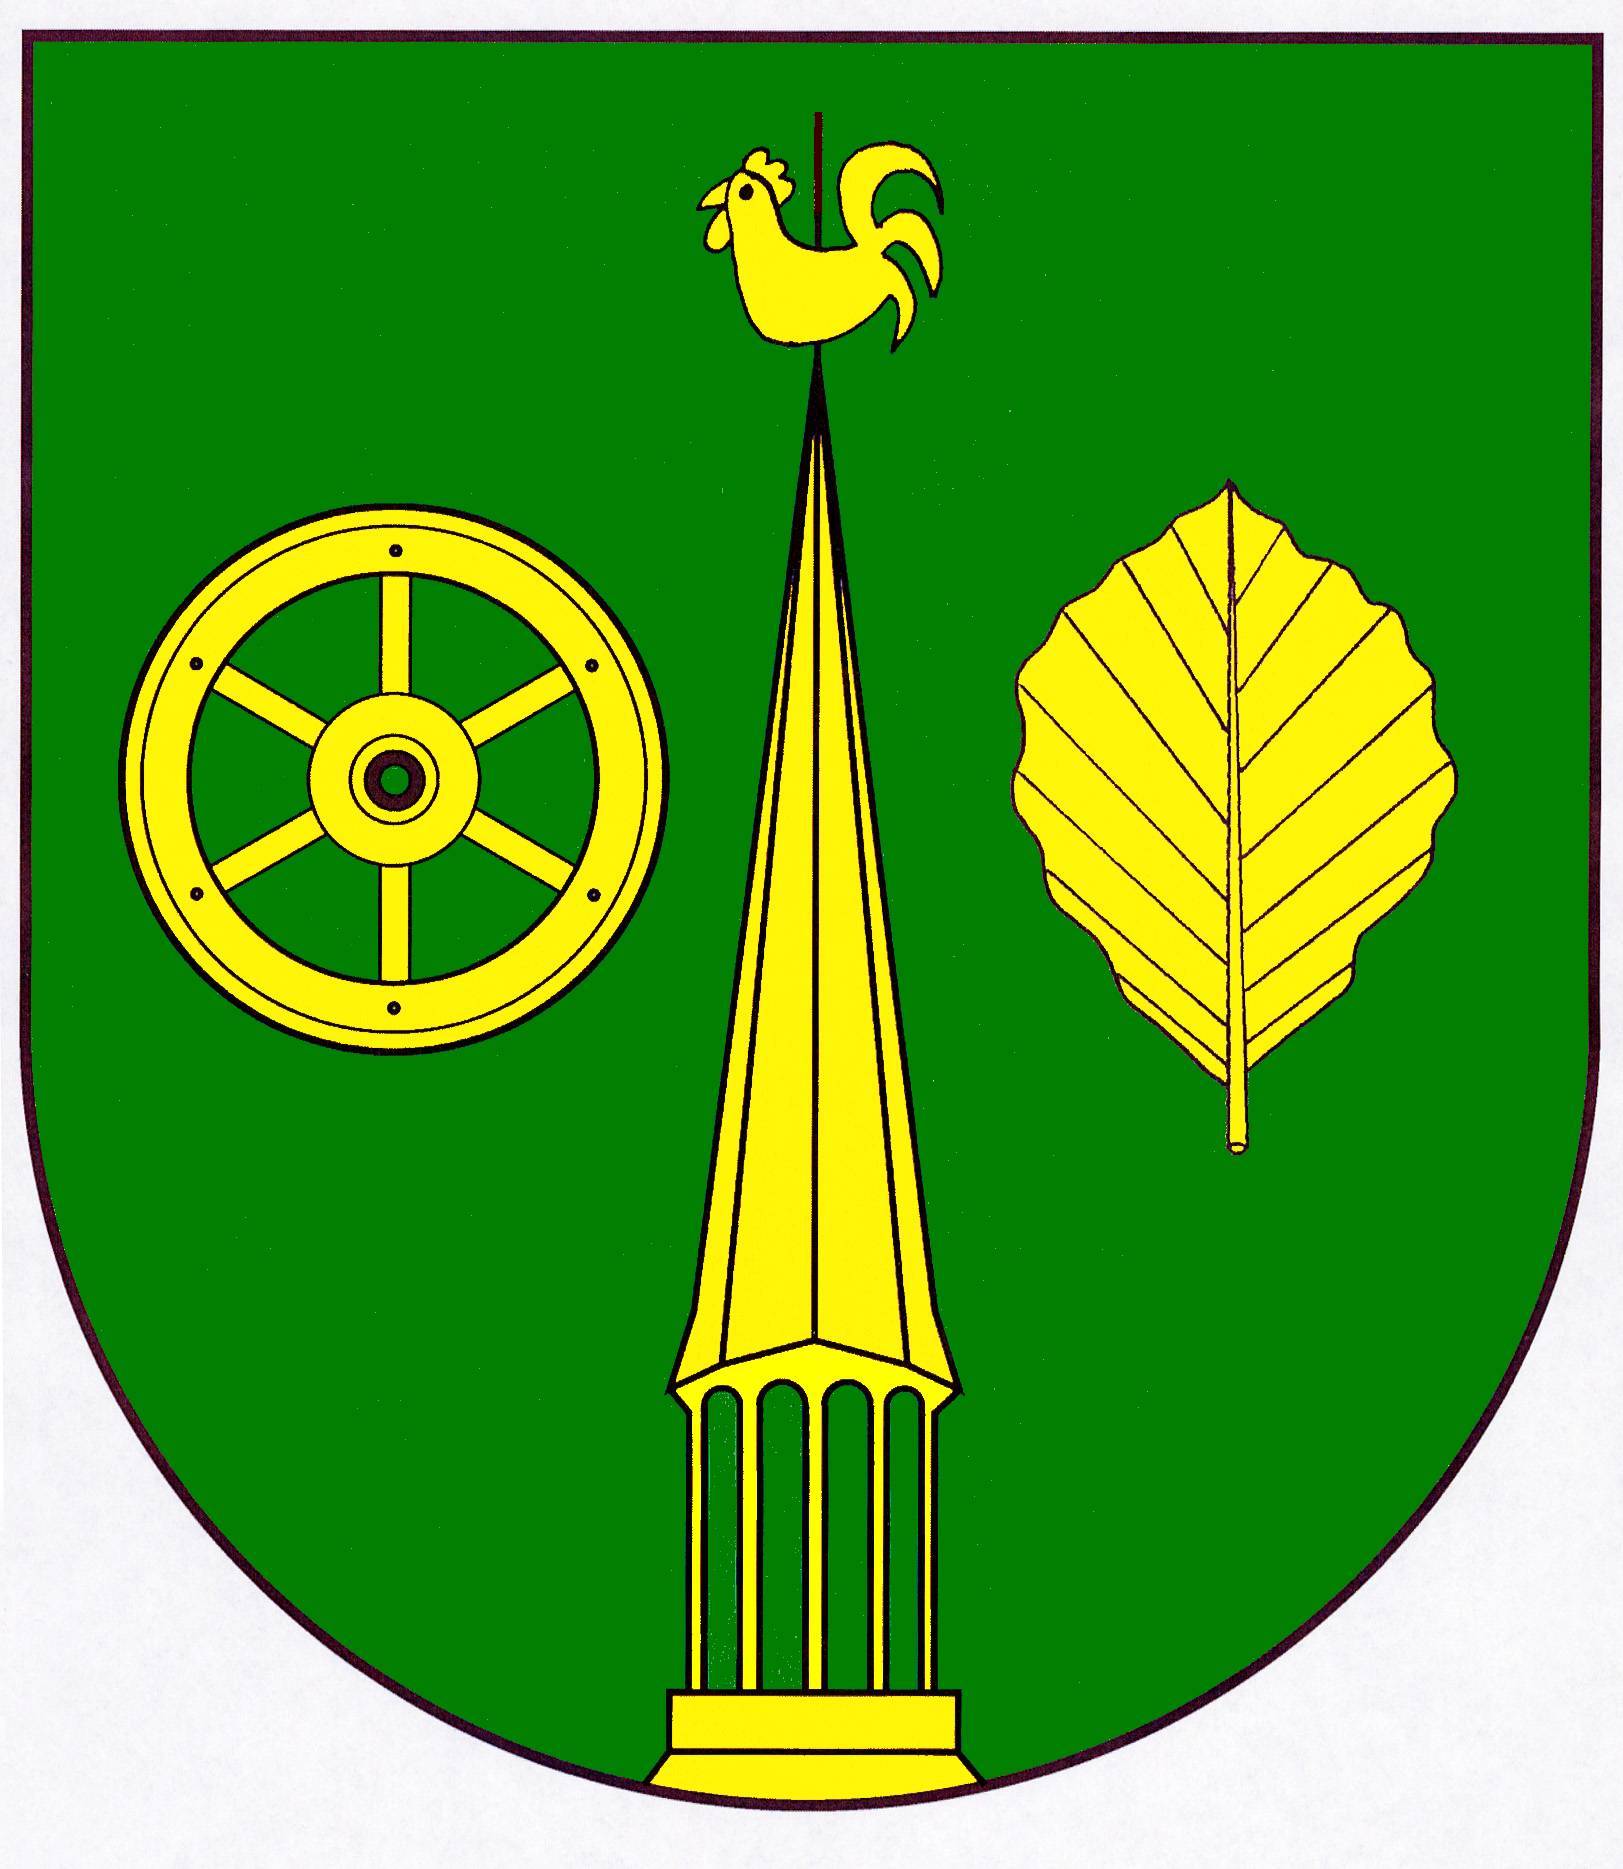 Wappen Gemeinde Hürup, Kreis Schleswig-Flensburg